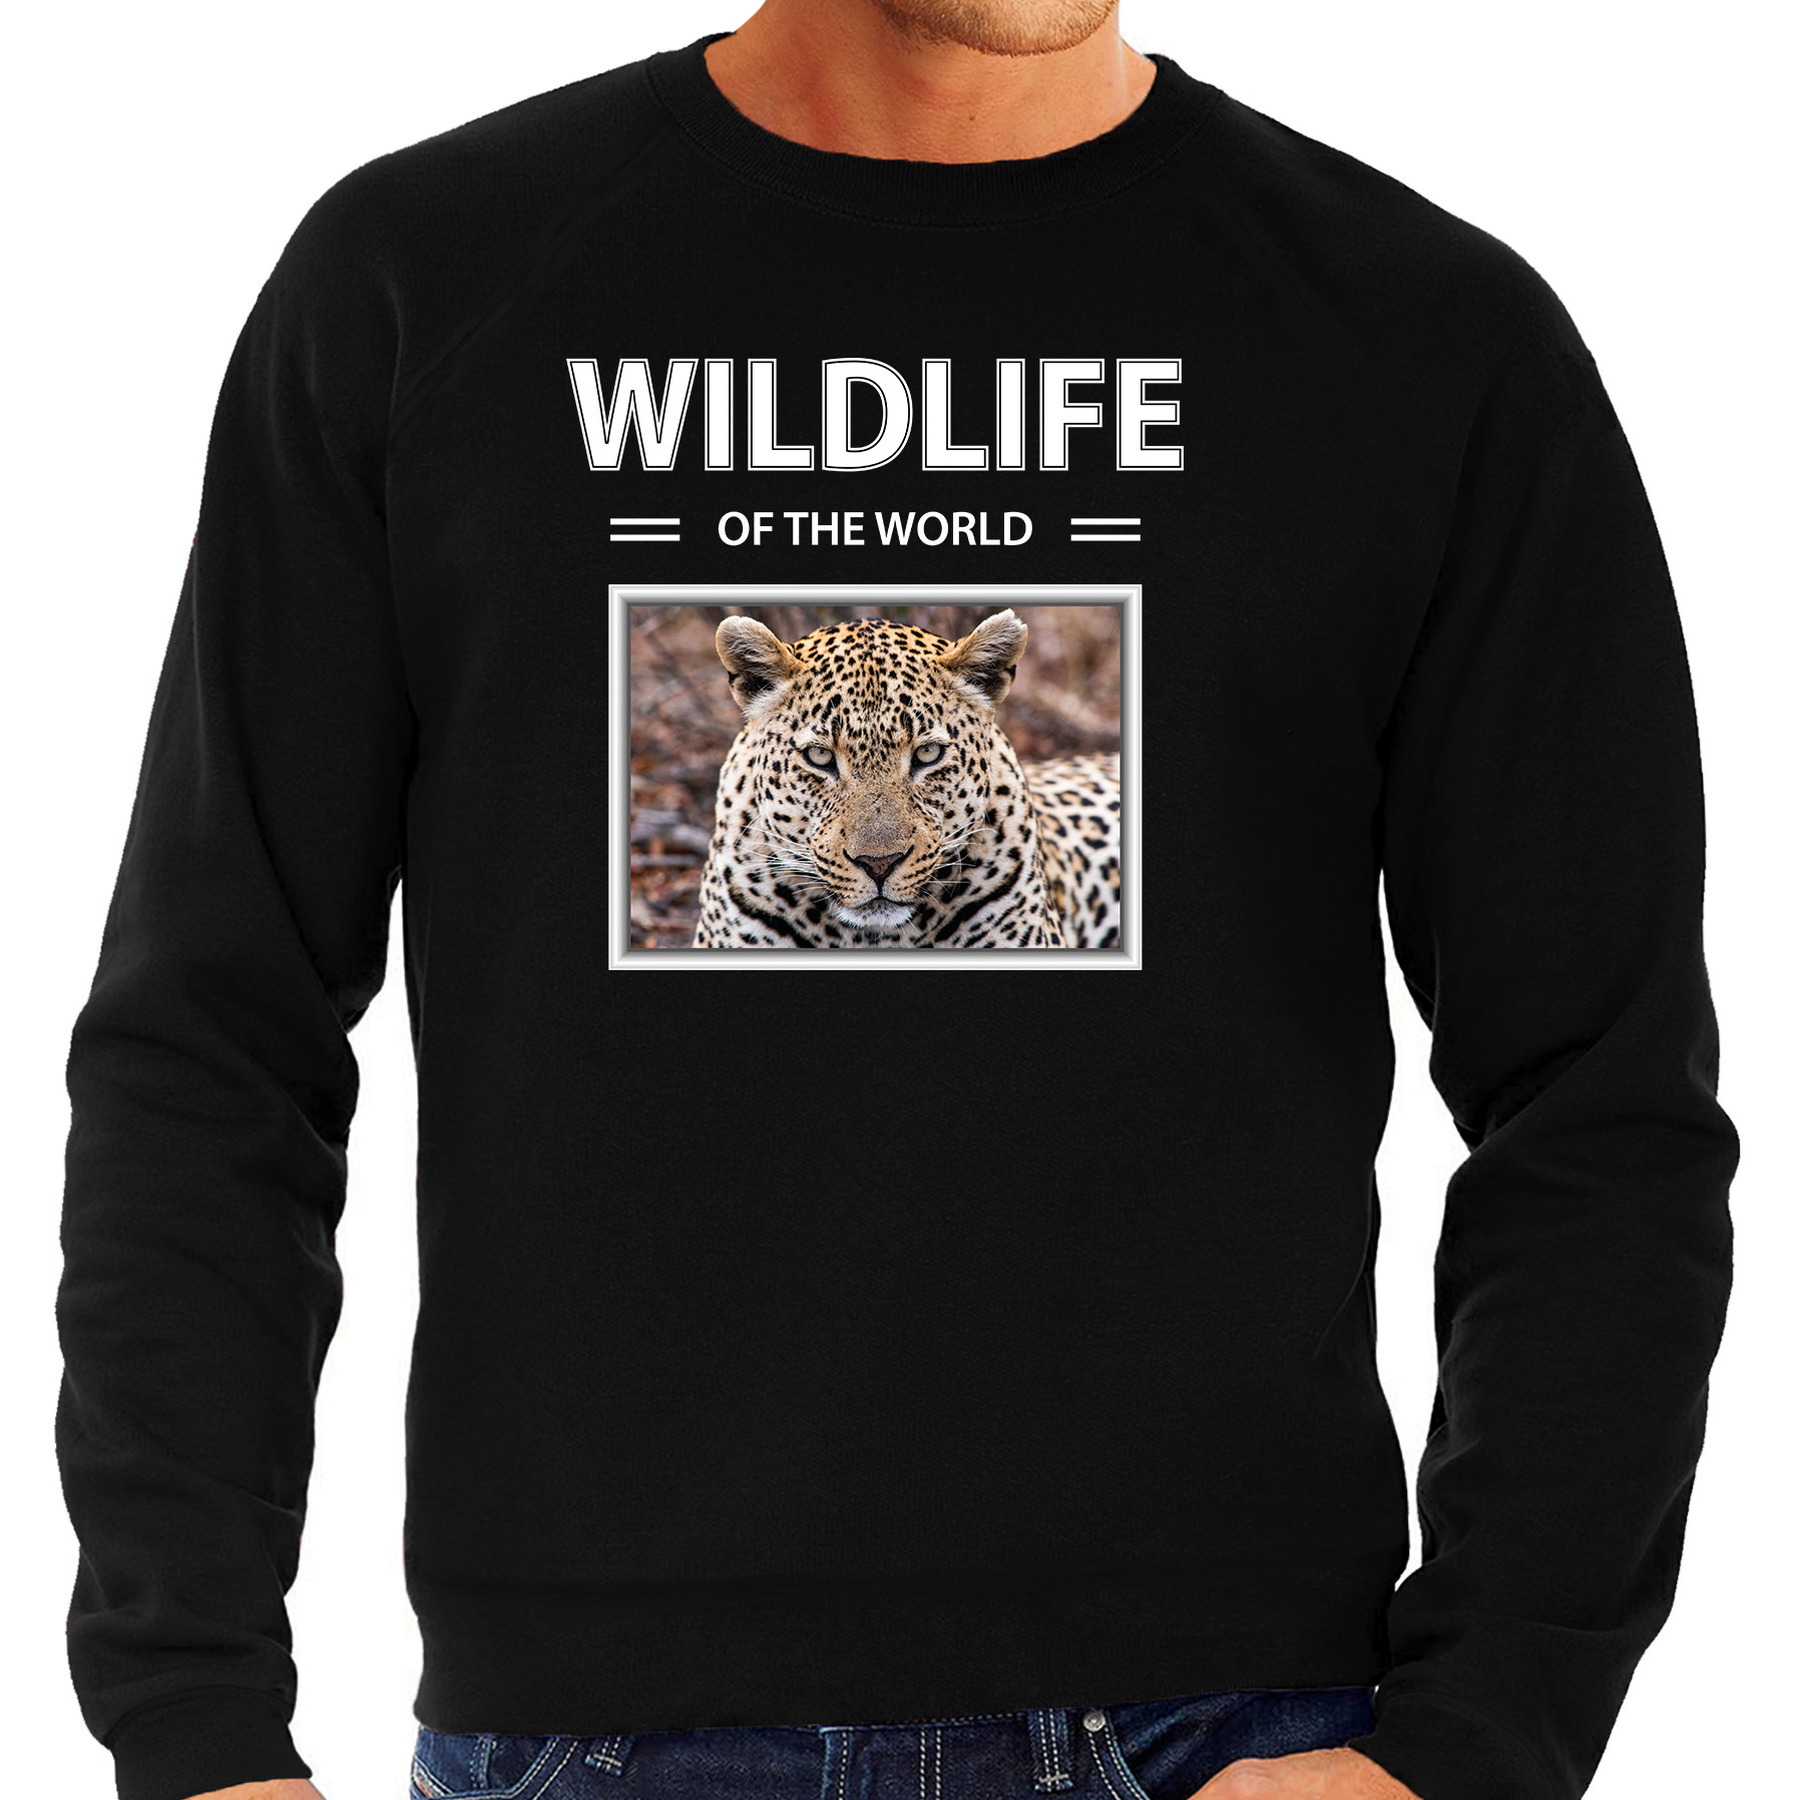 Jaguar sweater / trui met dieren foto wildlife of the world zwart voor heren